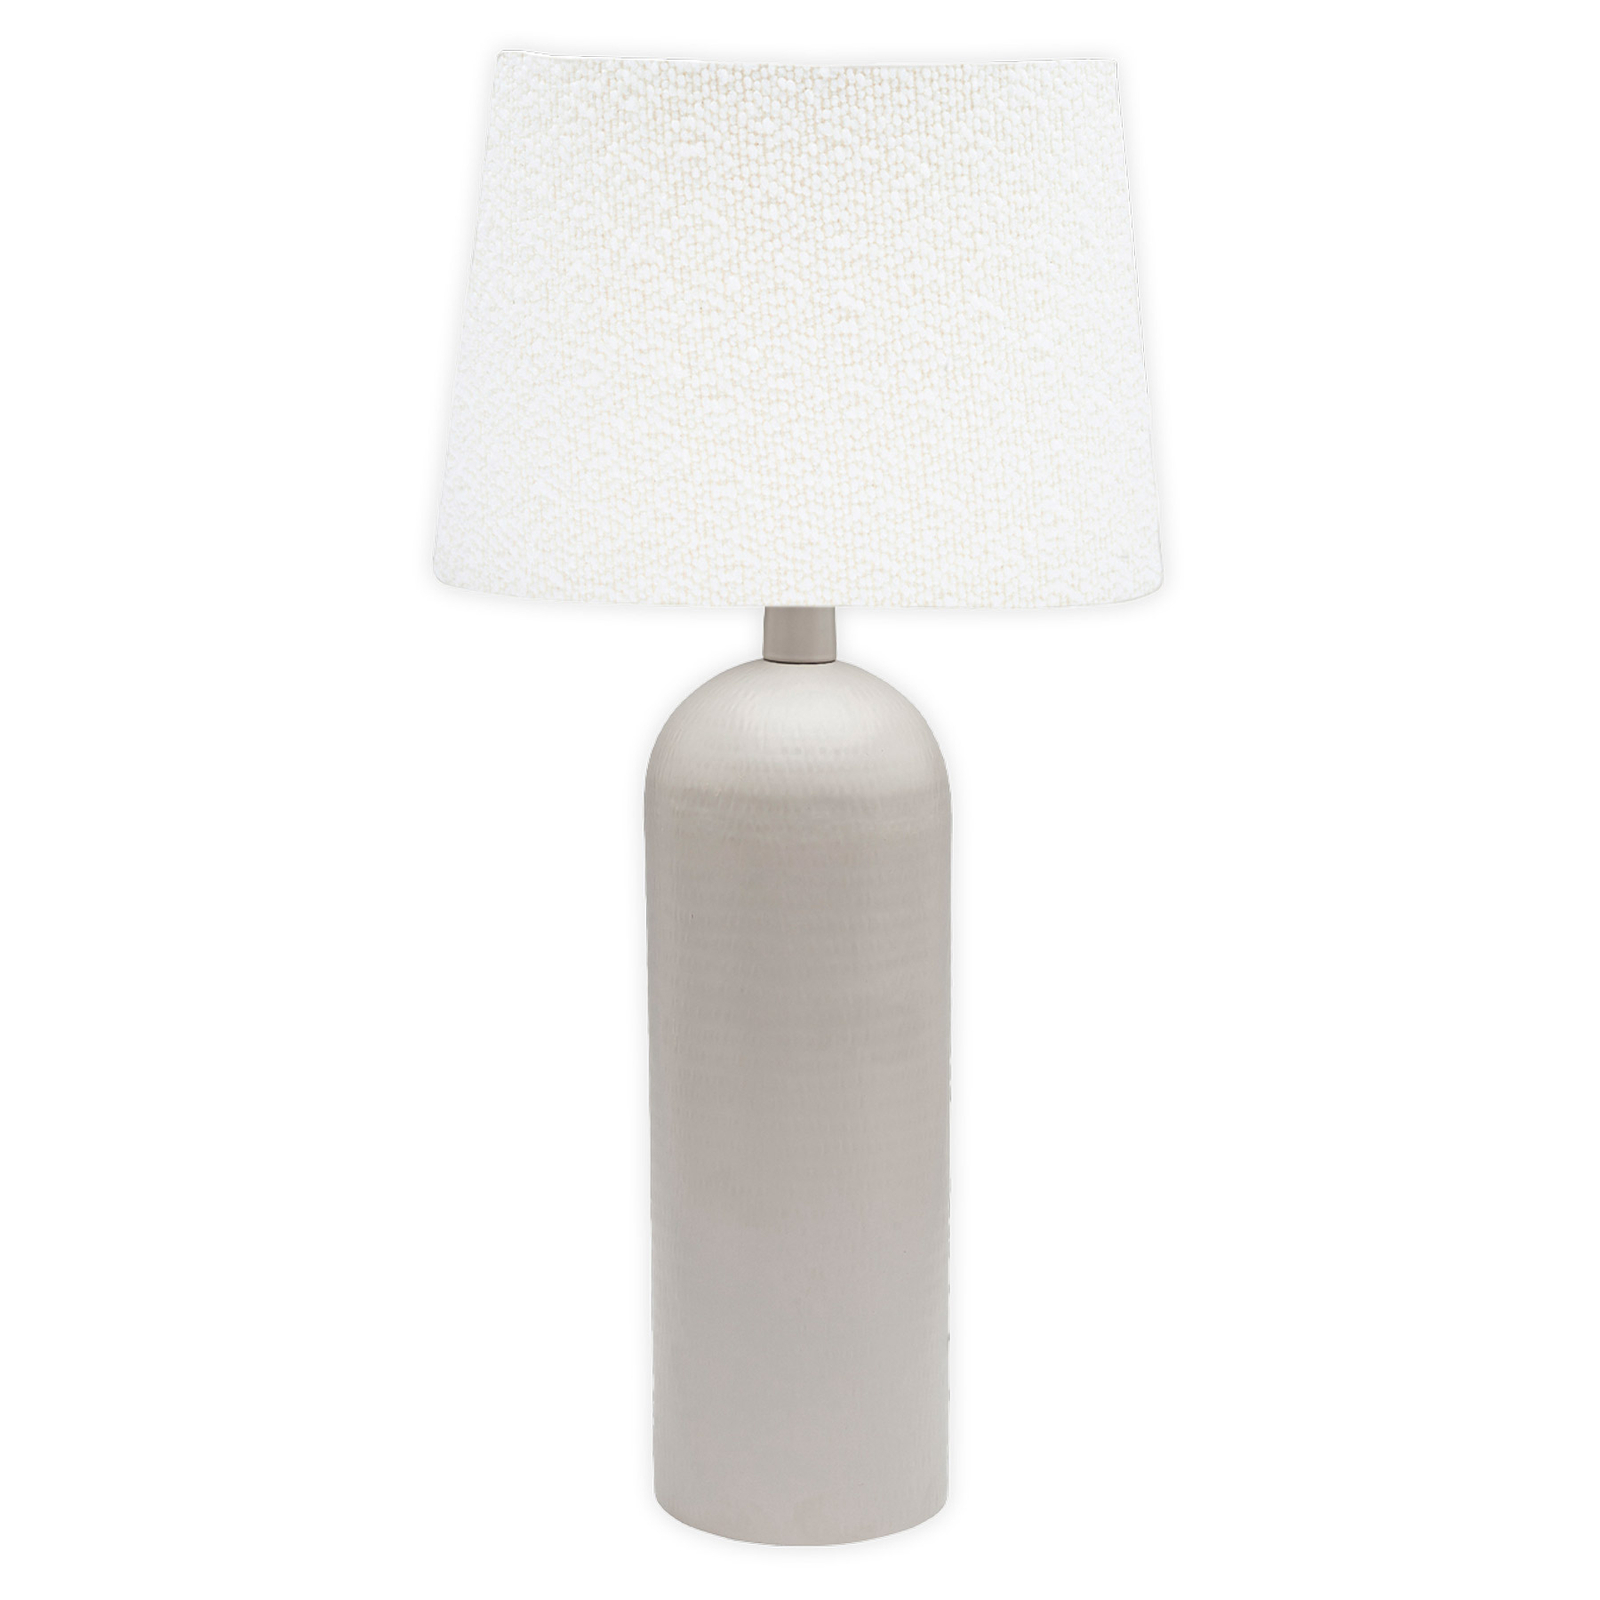 PR Home Riley tafellamp, wit/beige, hoogte 54 cm